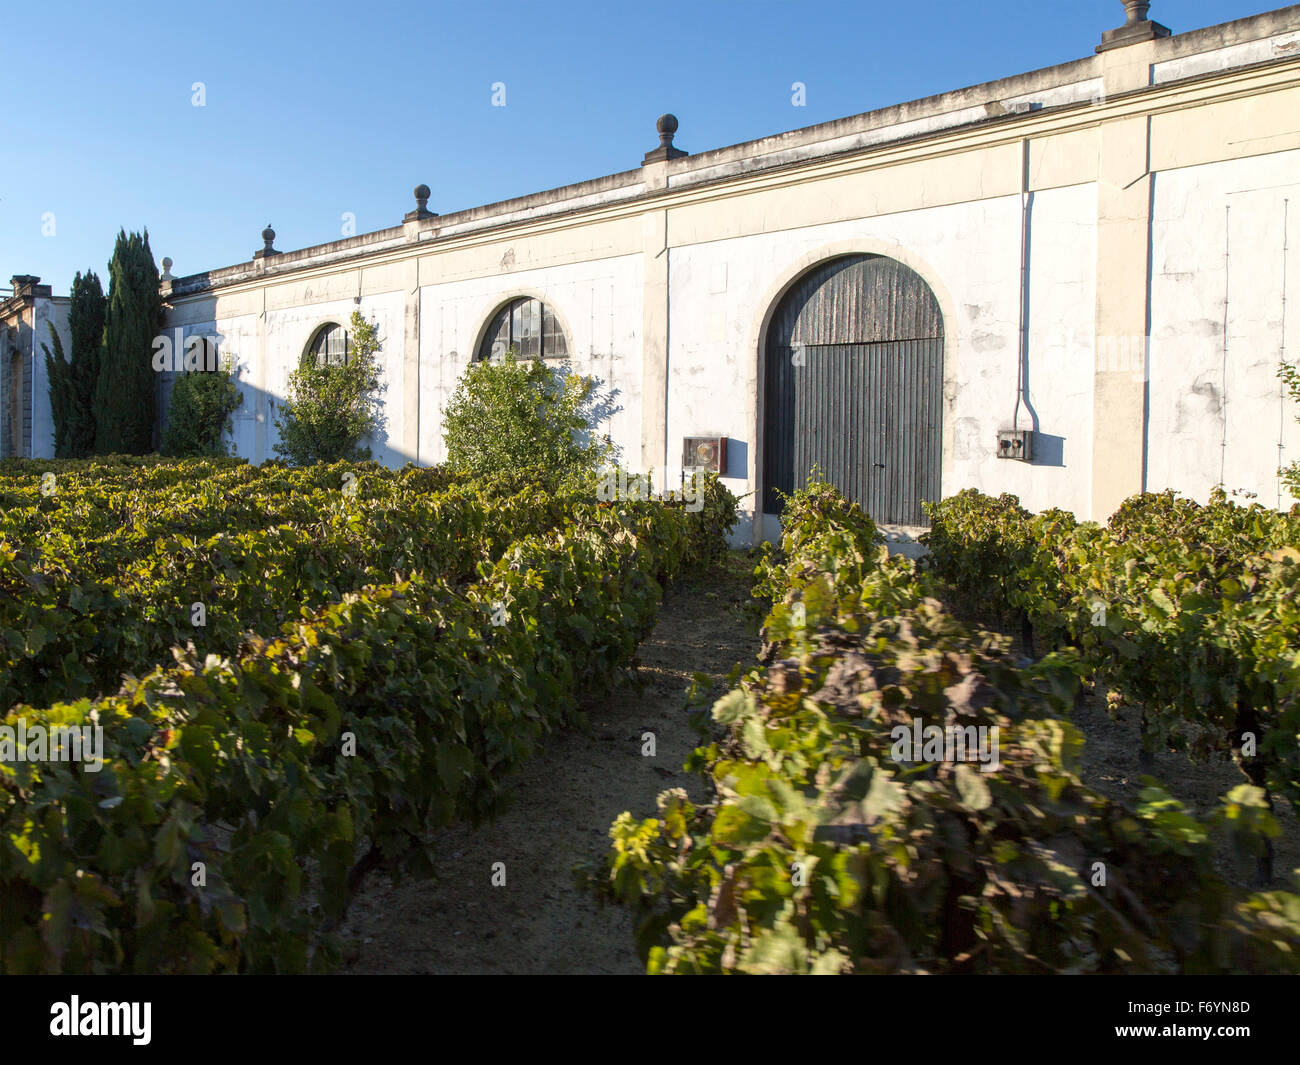 Grapes growing in vignoble et à la bodega, Gonzalez Byass Jerez de la Frontera, province de Cadiz, Espagne Banque D'Images